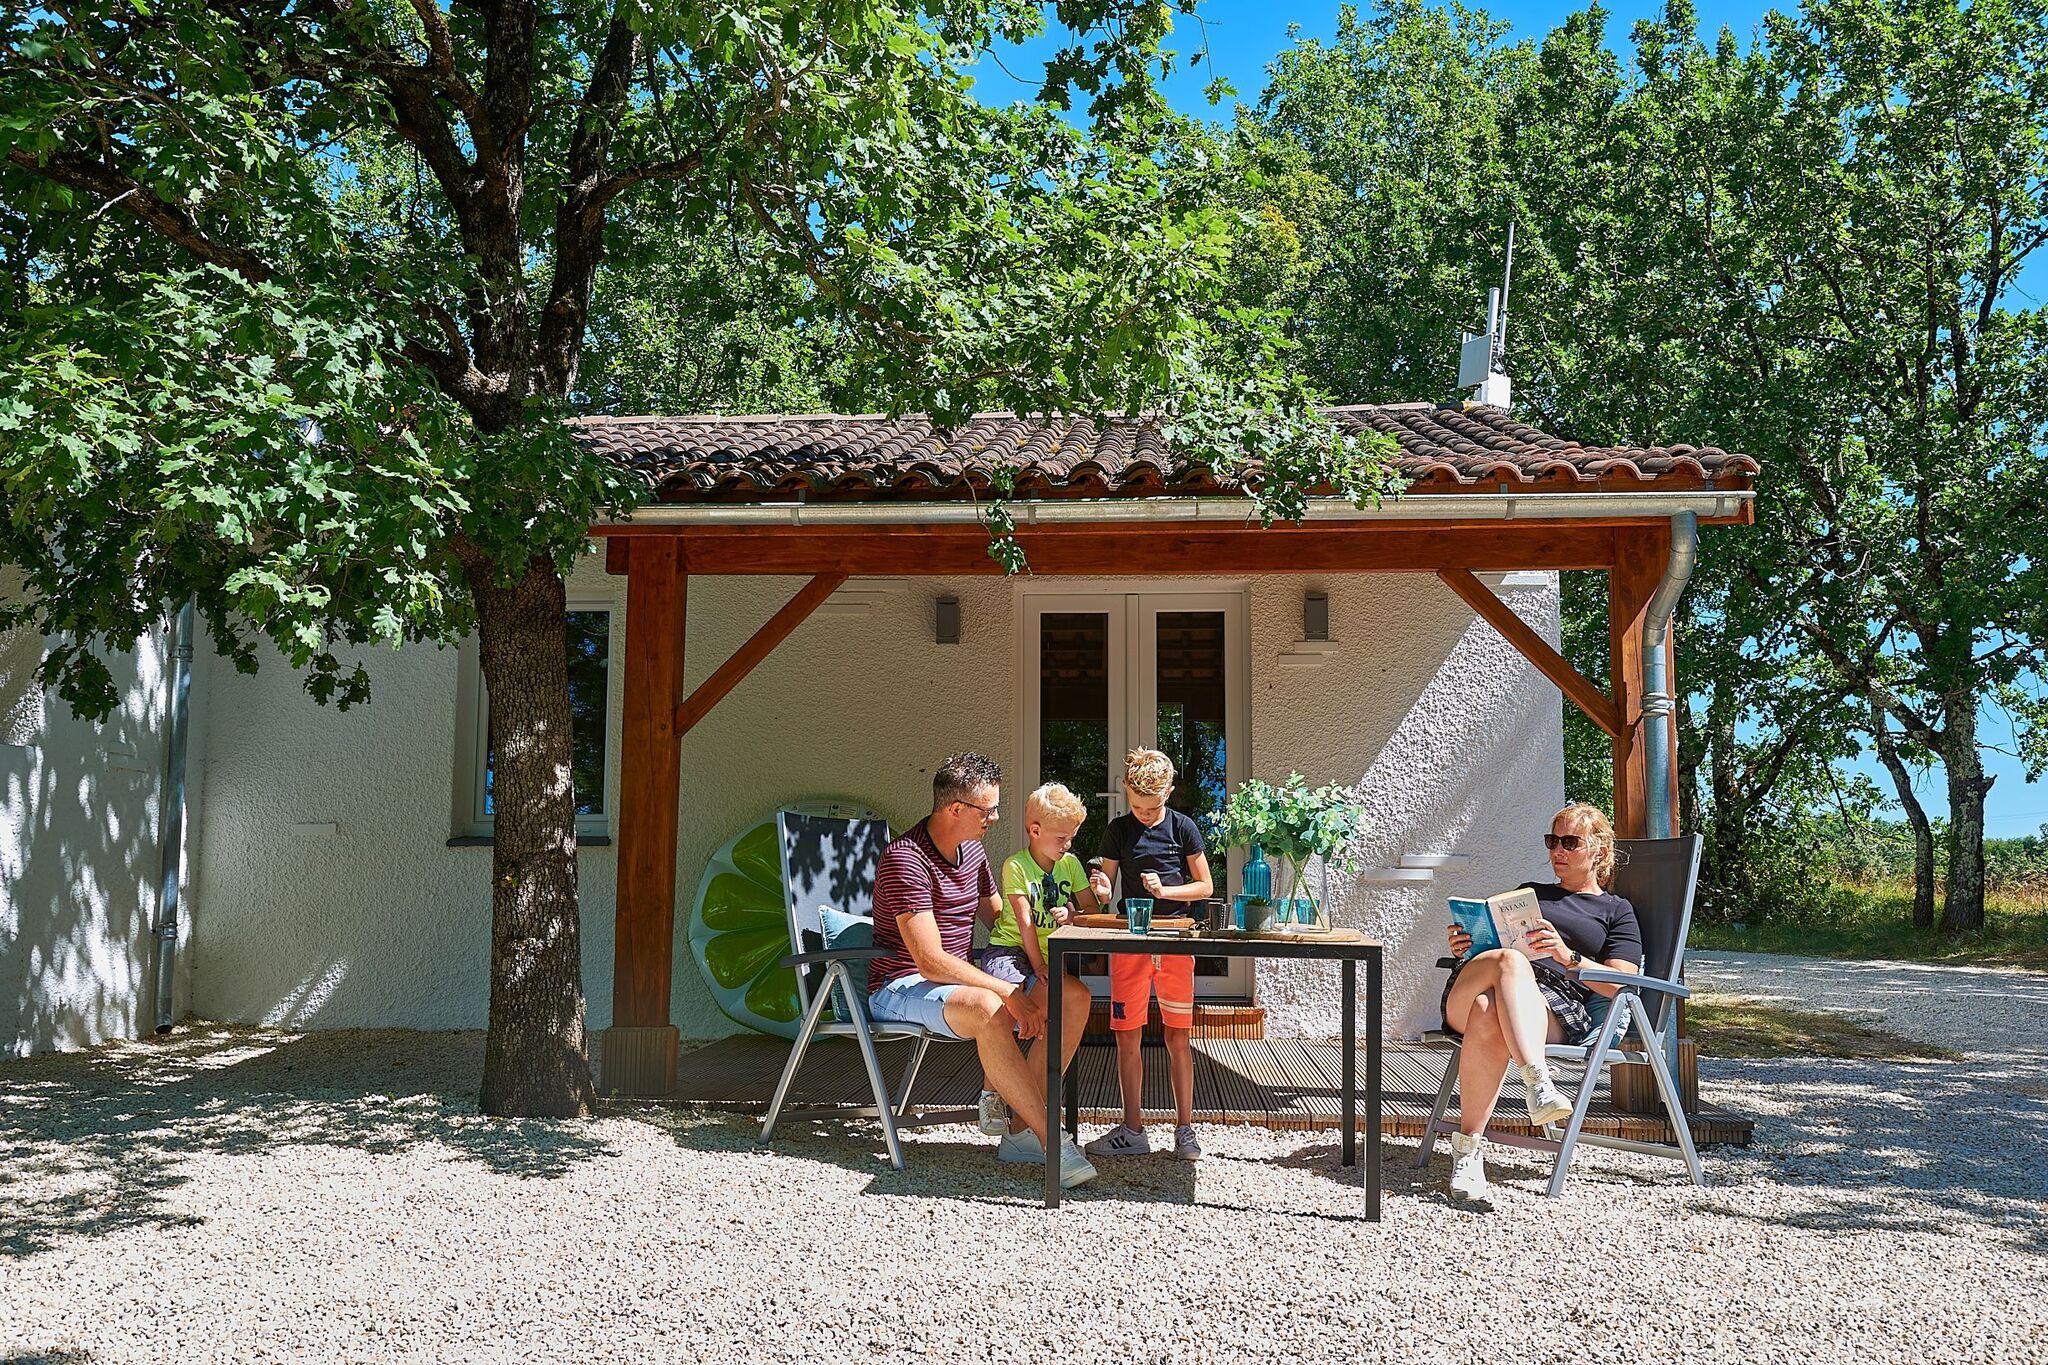 Joli bungalow avec terrasse sur une colline en Dordogne.